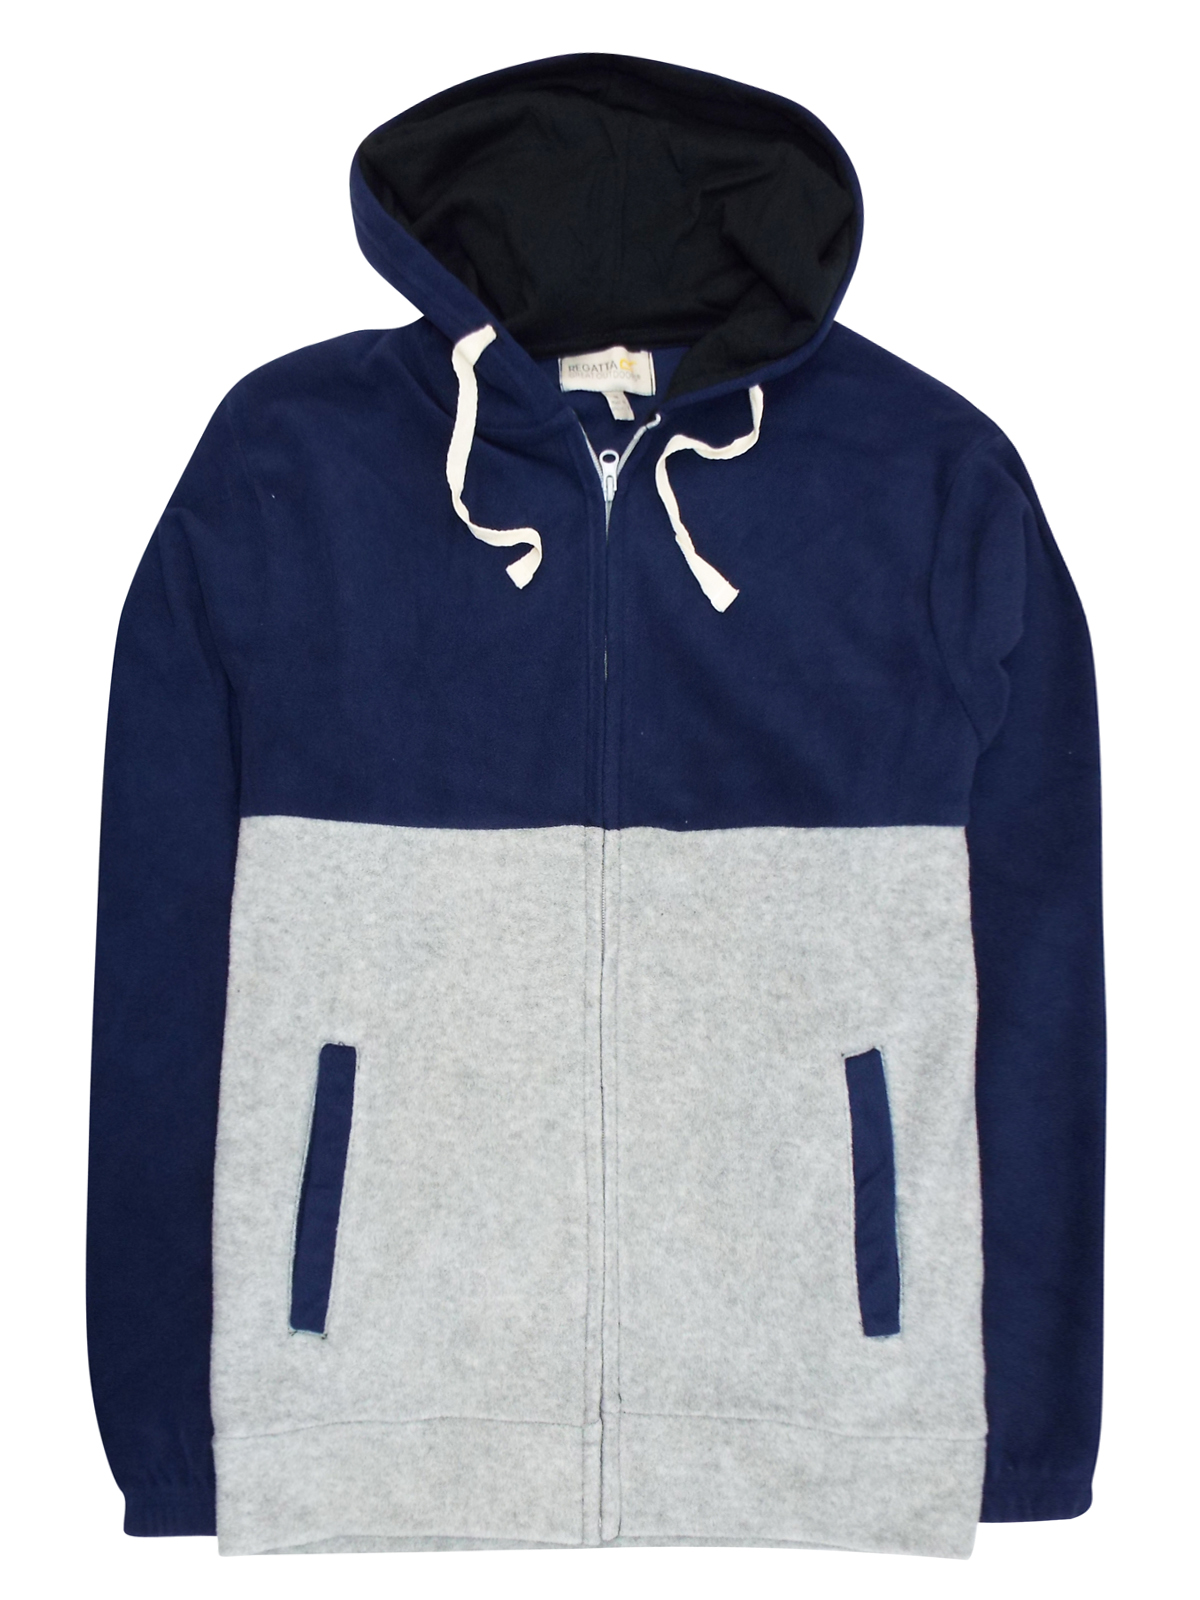 Regatta - - Regatta NAVY/GREY Zip Through Hooded Sweatshirt - Size Medium